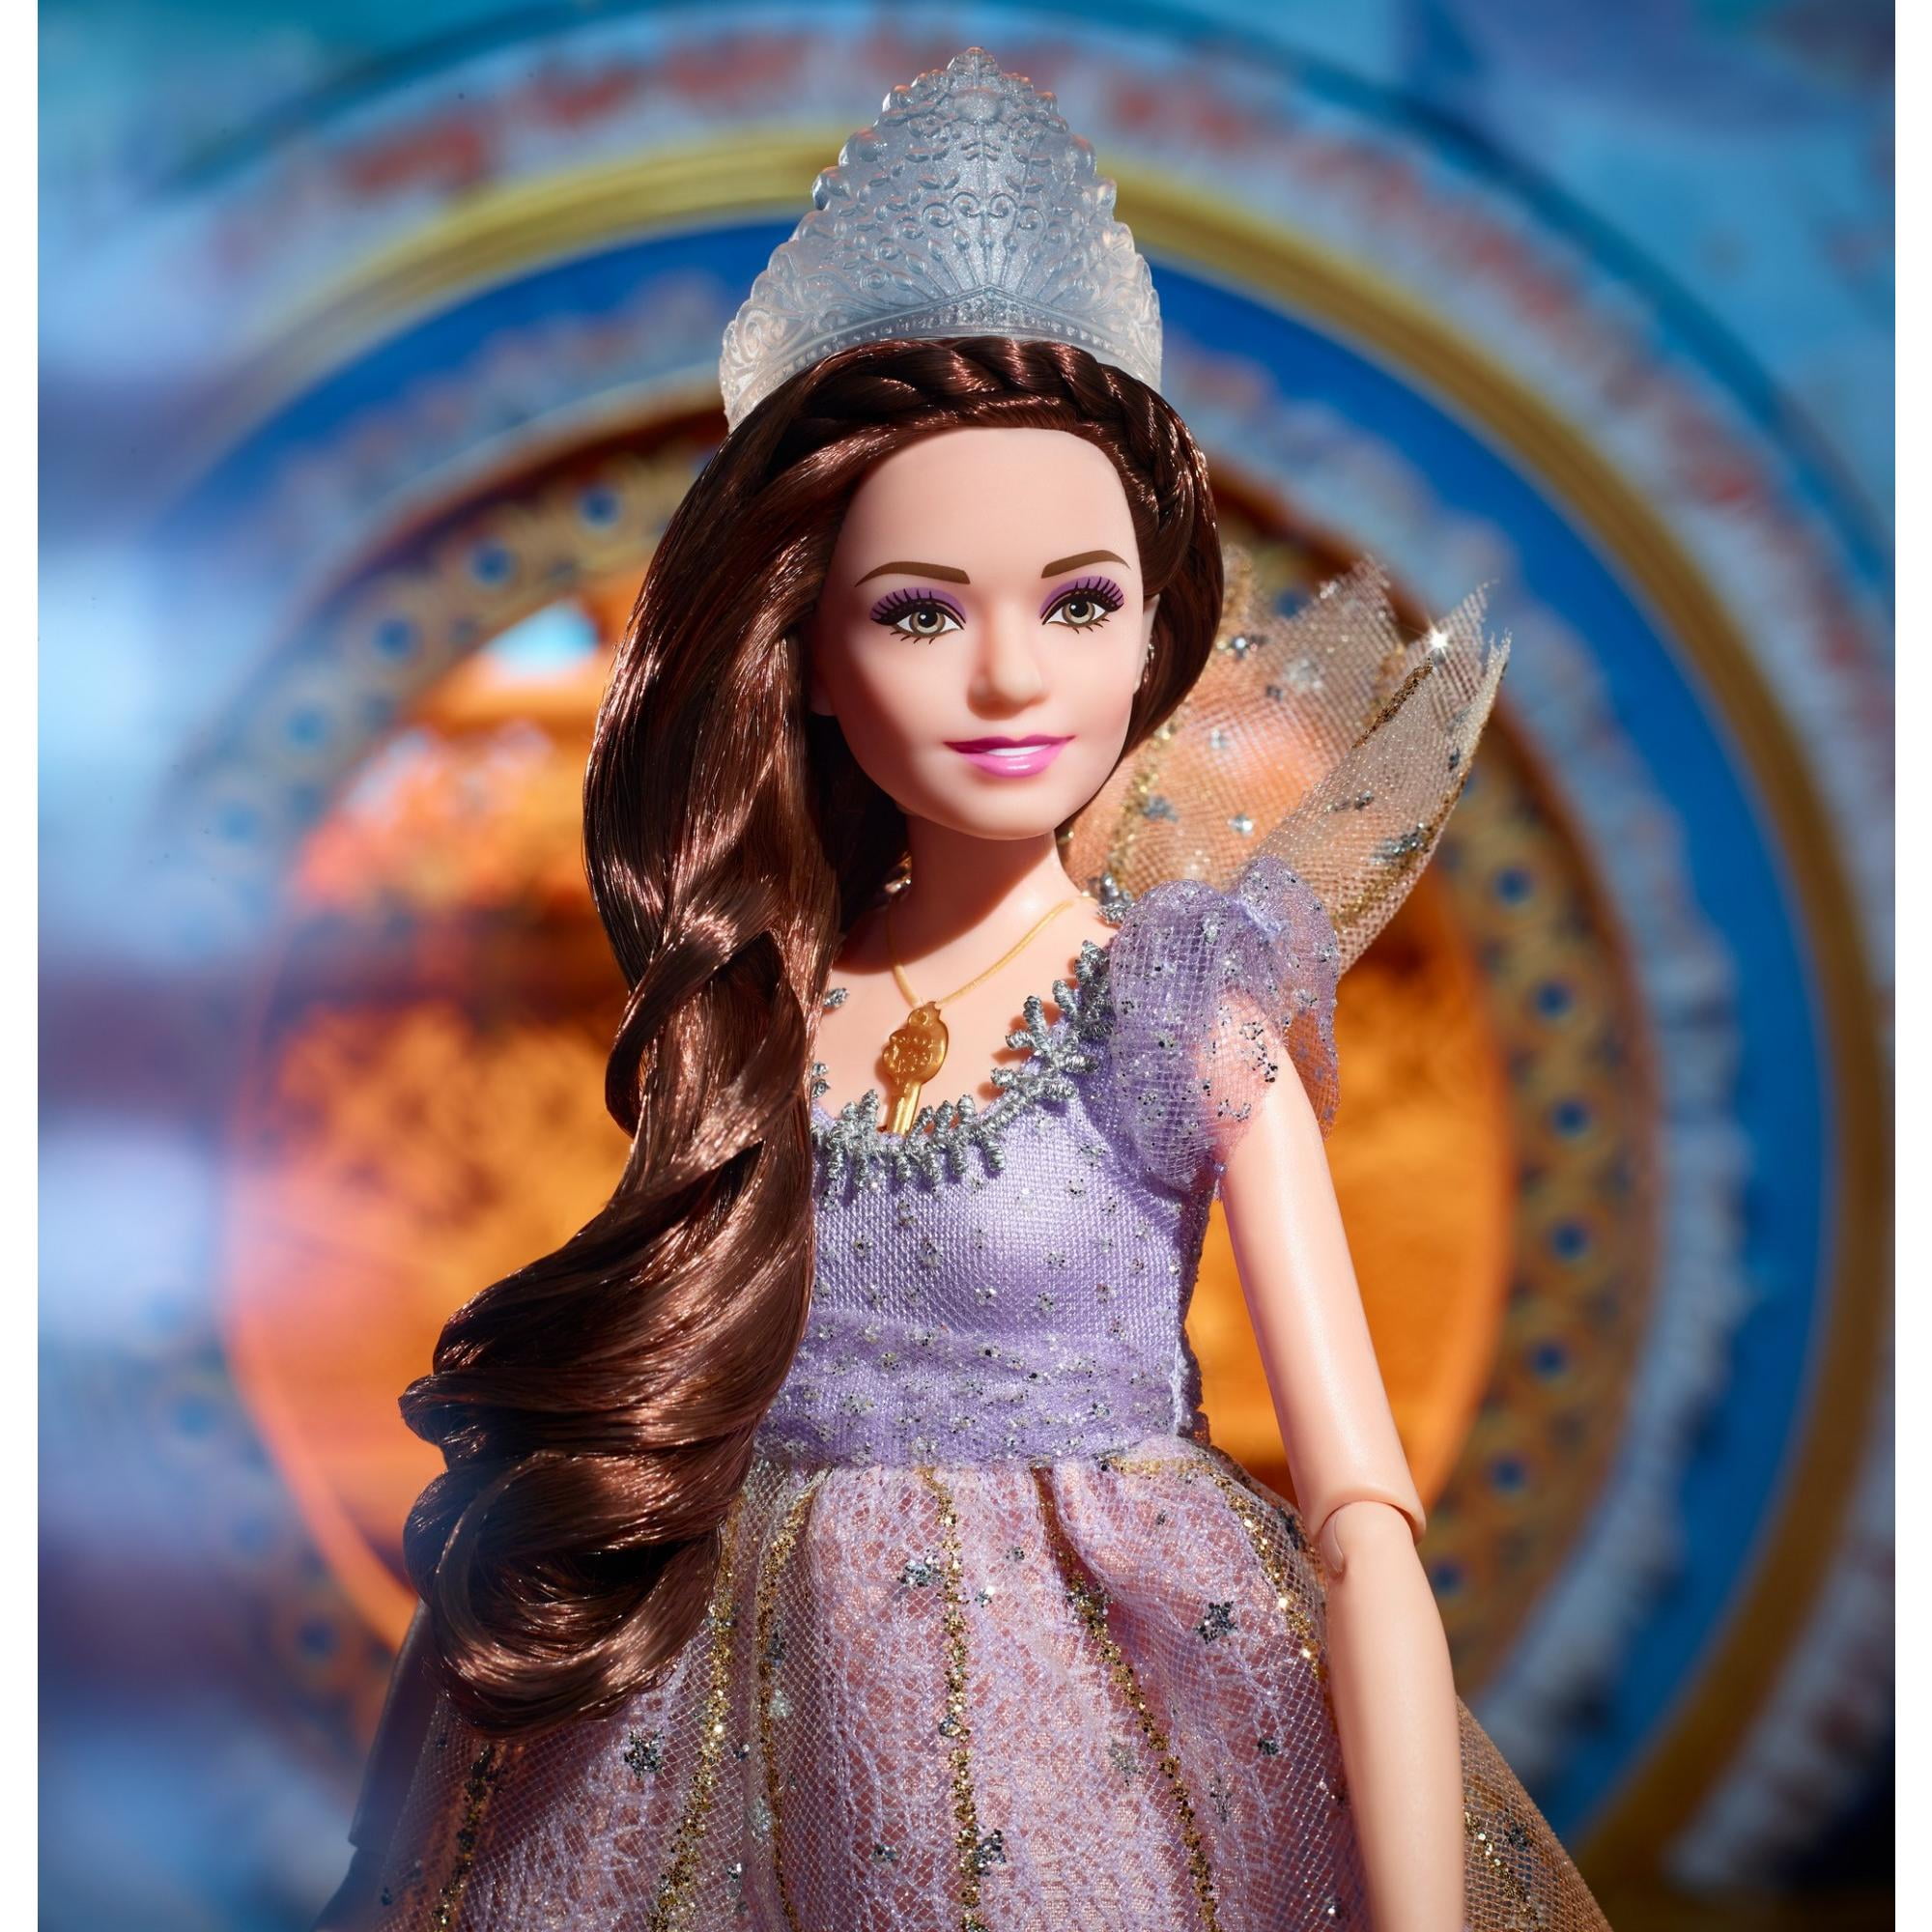 Barbie Disney The Nutcracker and The Four Realms Clara Light-Up Dress Doll